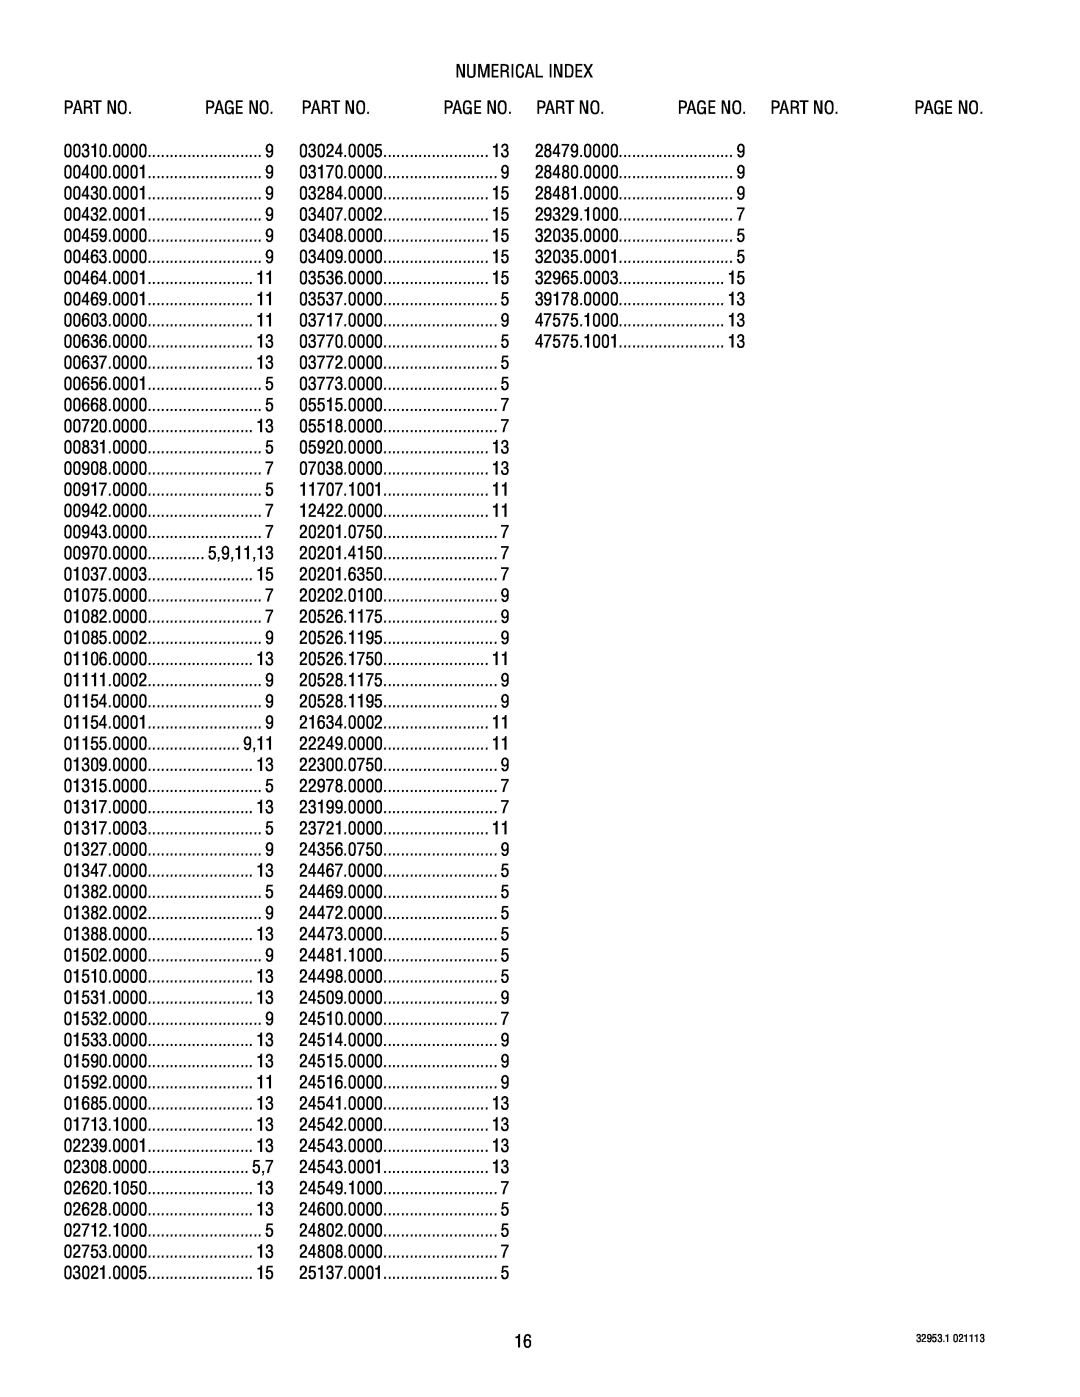 Bunn TU5Q specifications Numerical Index 